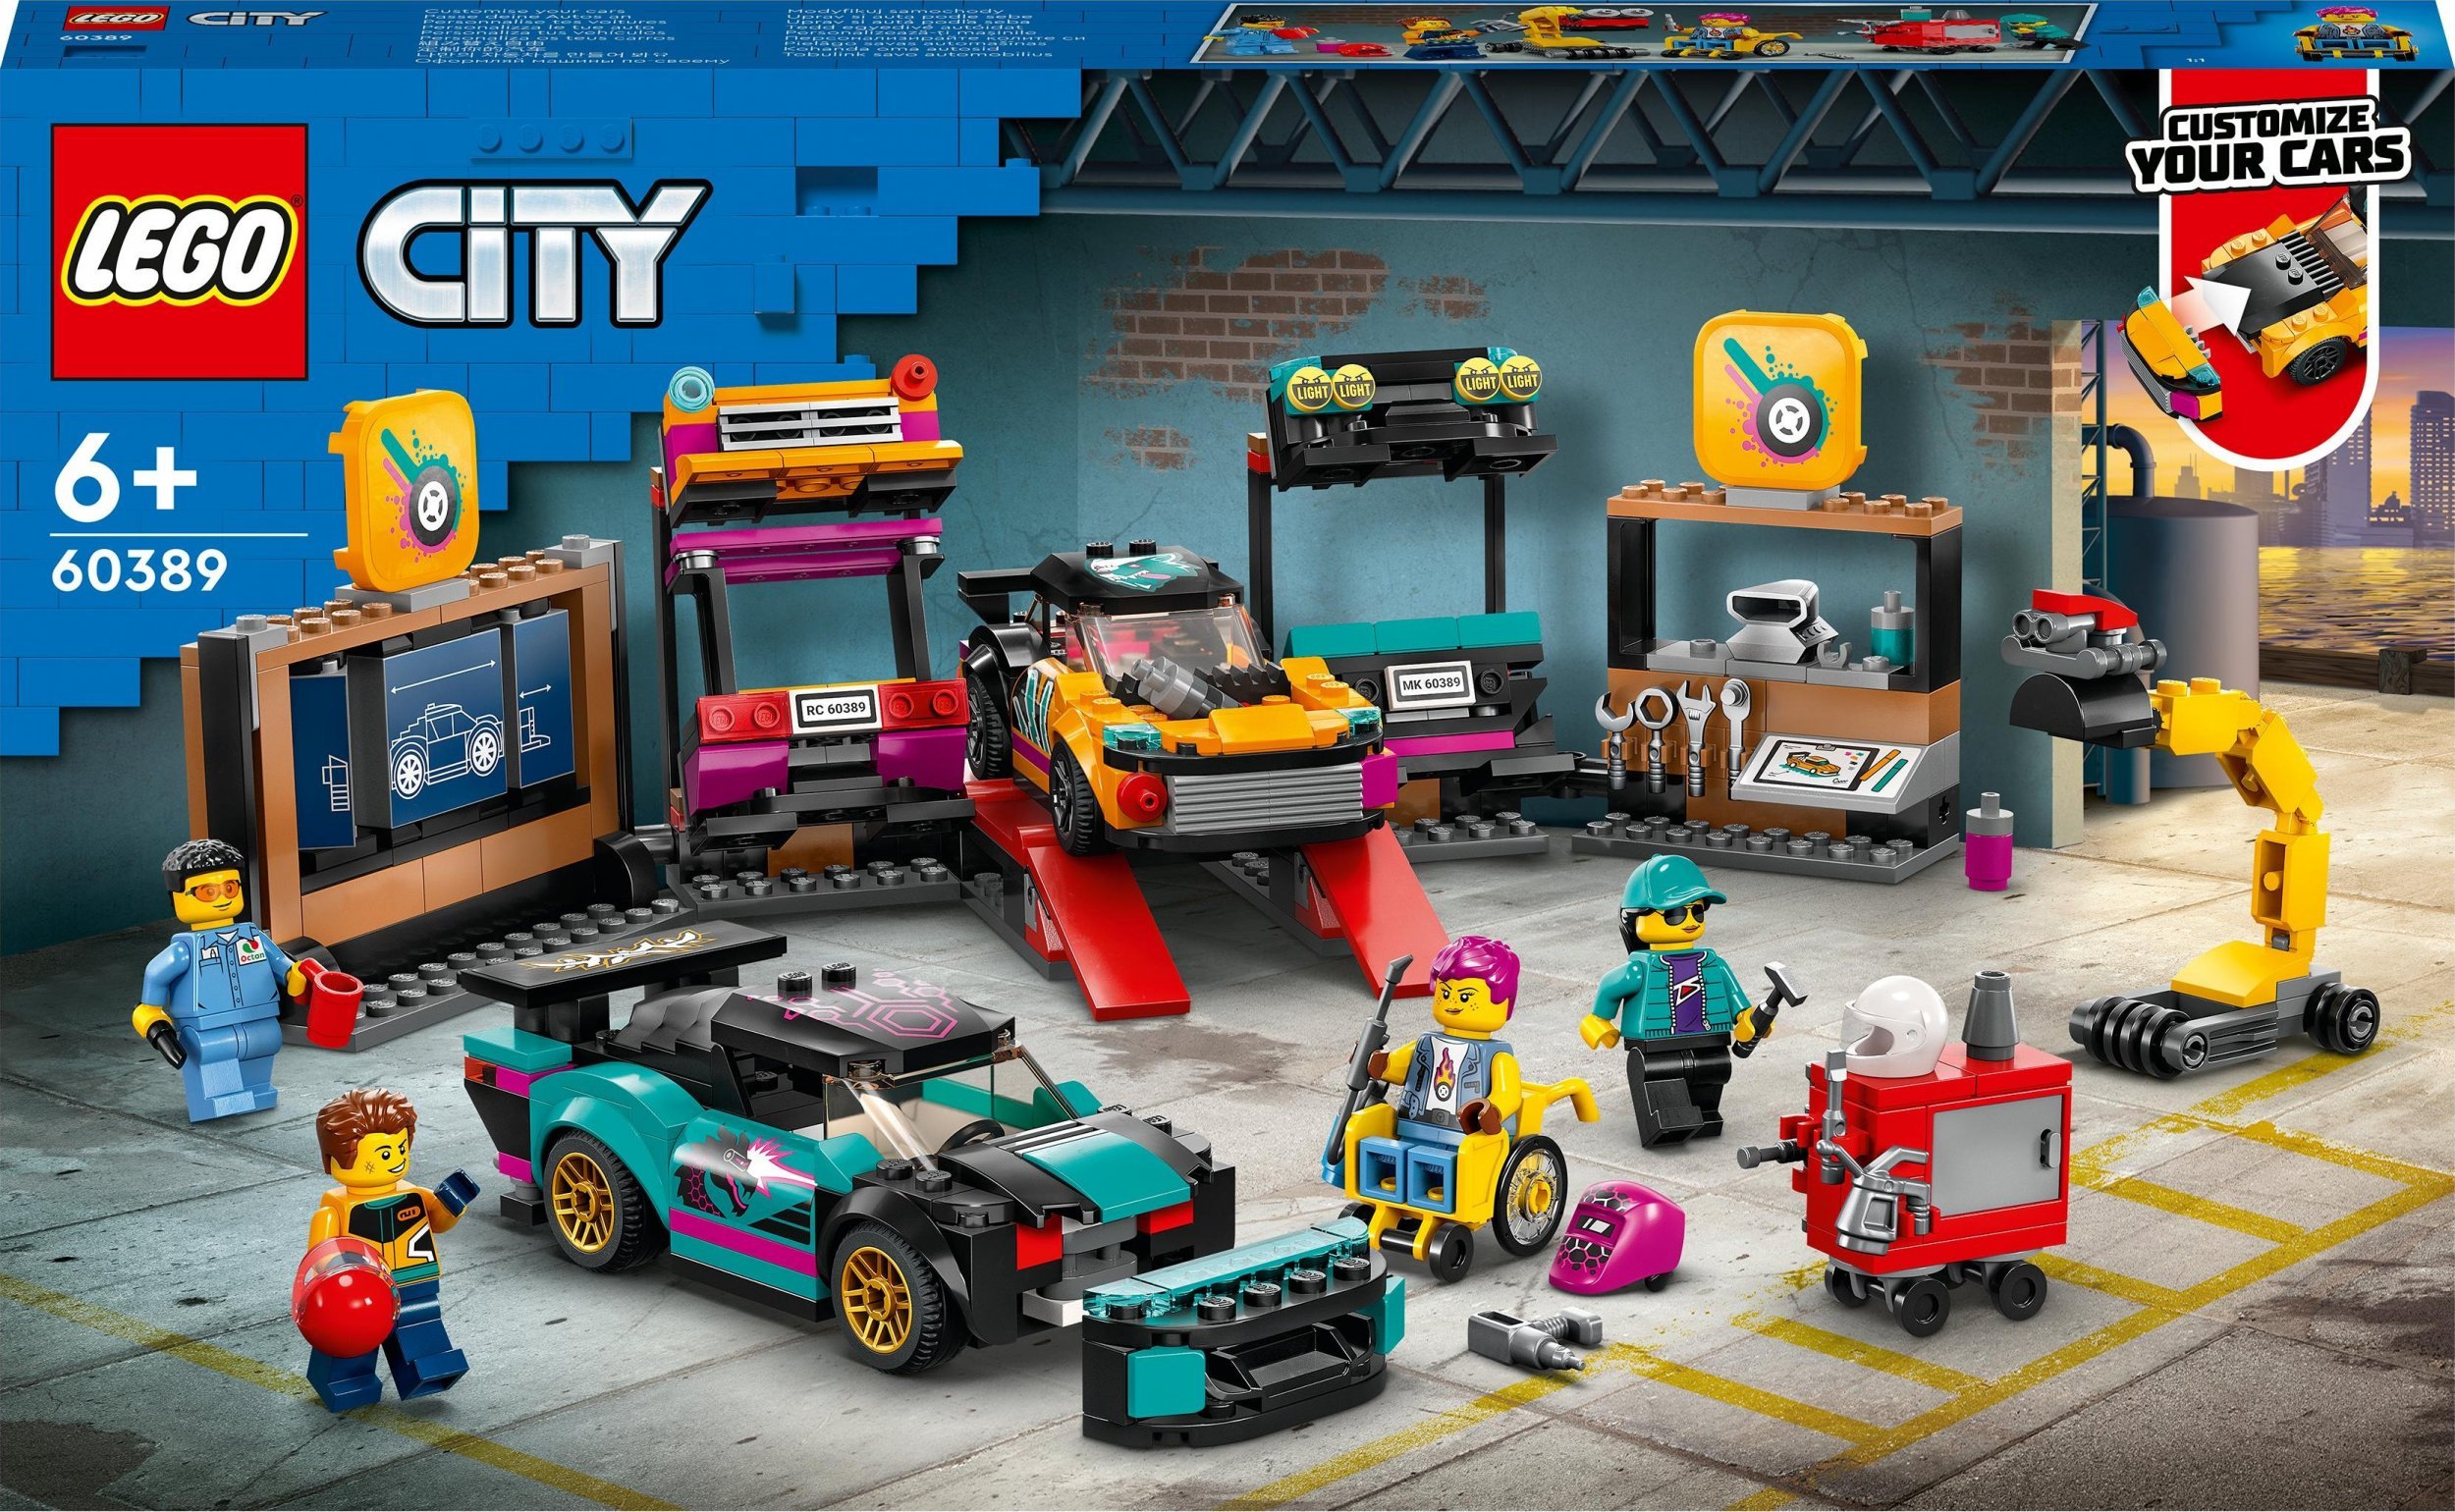 Atelier de reglare a mașinilor LEGO City (60389)